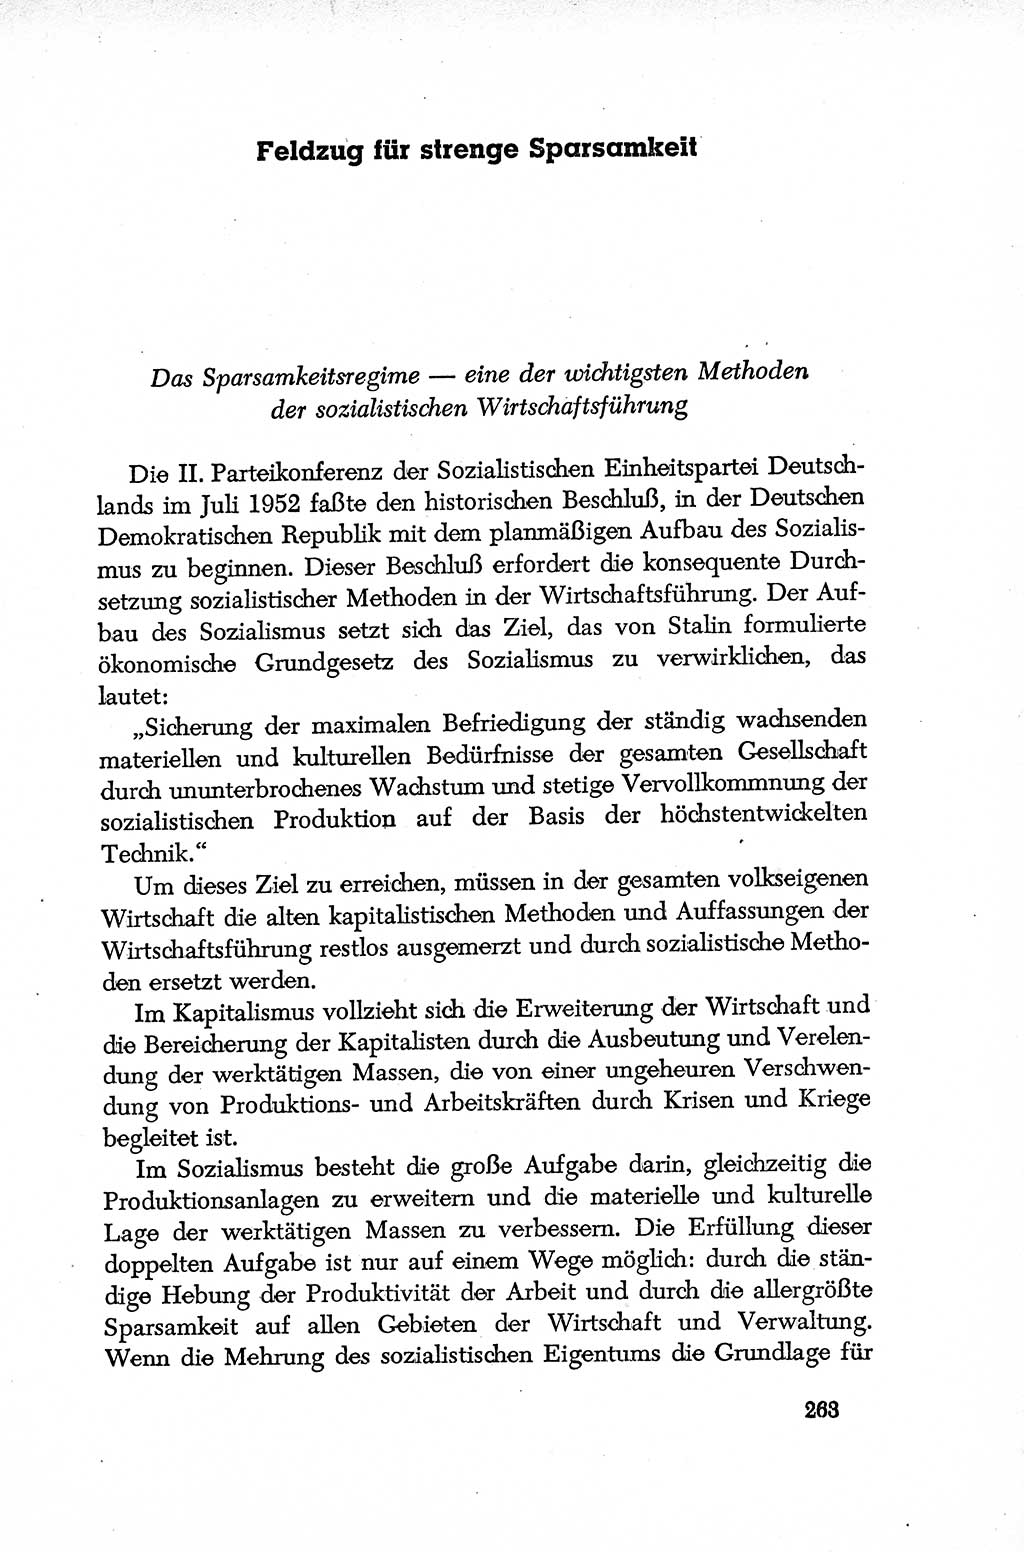 Dokumente der Sozialistischen Einheitspartei Deutschlands (SED) [Deutsche Demokratische Republik (DDR)] 1952-1953, Seite 263 (Dok. SED DDR 1952-1953, S. 263)